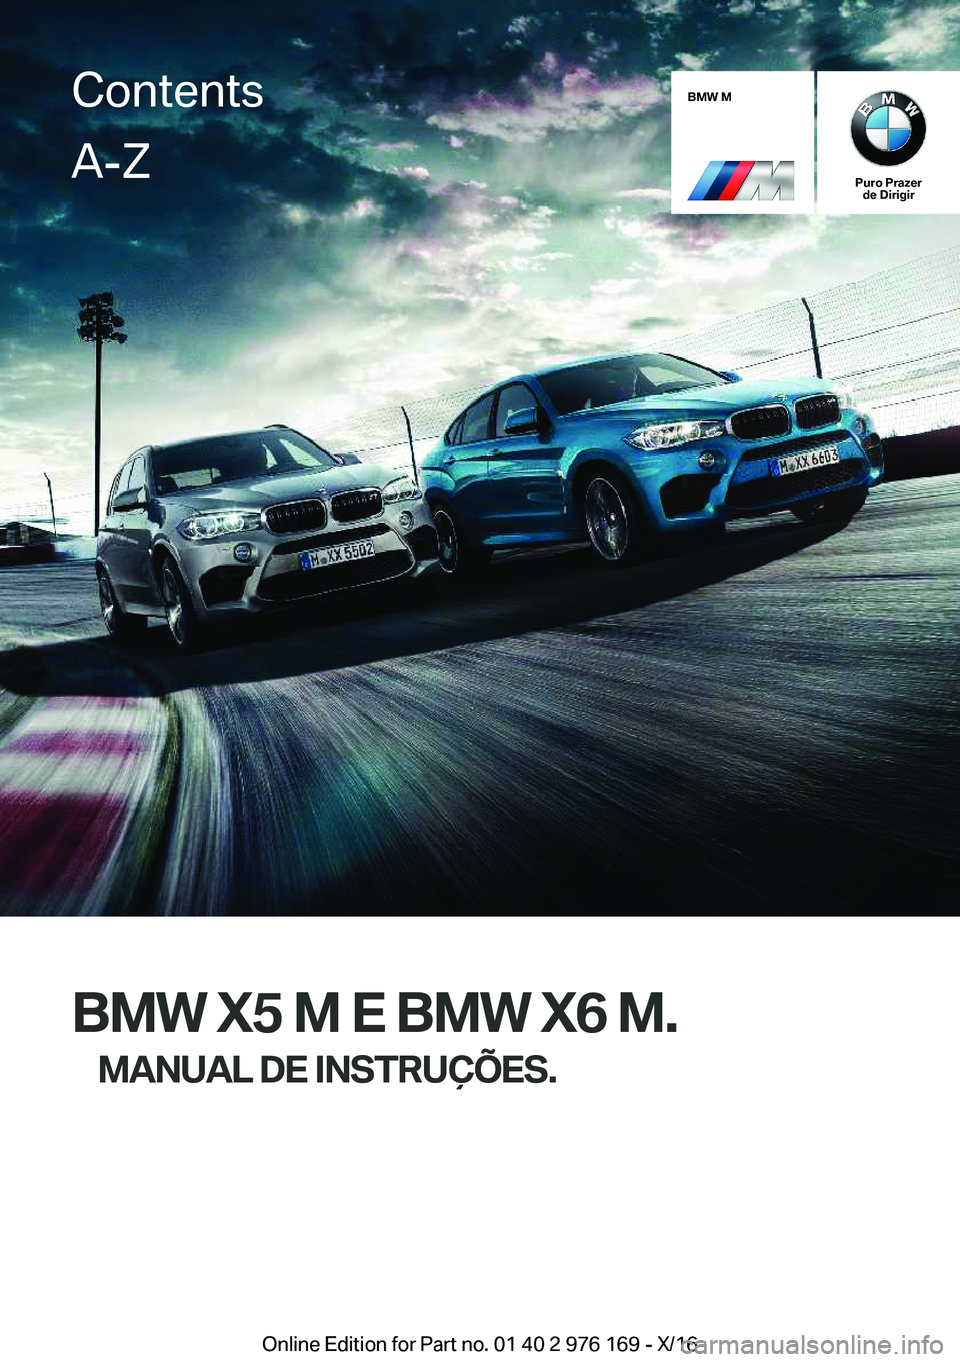 BMW X5 M 2017  Manual do condutor (in Portuguese) �B�M�W��M
�P�u�r�o��P�r�a�z�e�r�d�e��D�i�r�i�g�i�r
�B�M�W��X�5��M��E��B�M�W��X�6��M�.
�M�A�N�U�A�L��D�E��I�N�S�T�R�U�